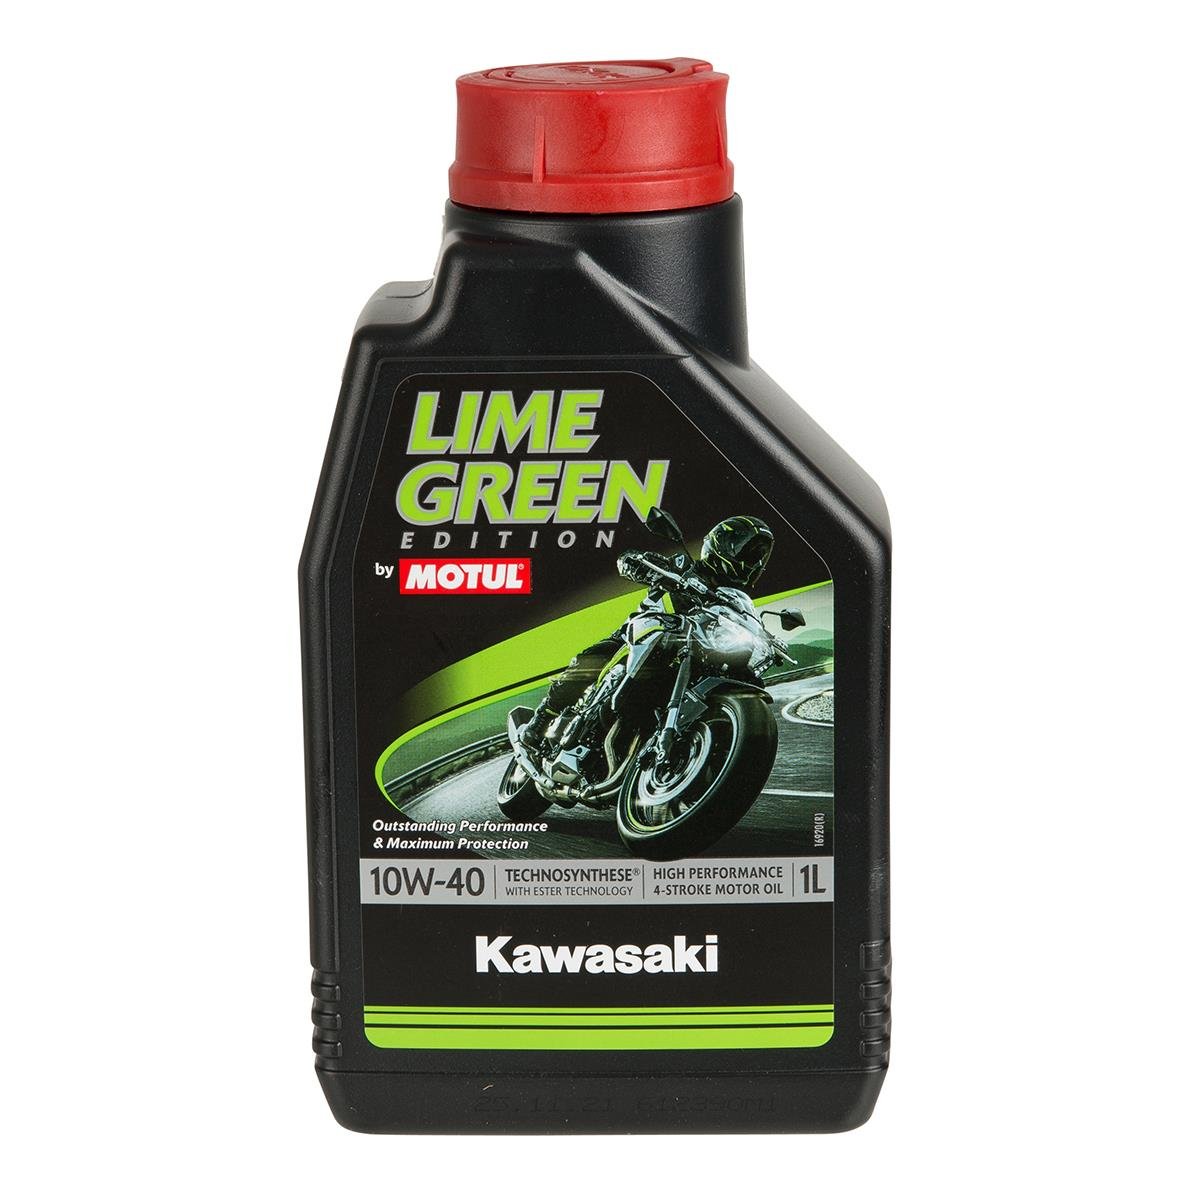 Motul Motorenöl Kawasaki Lime Green 10W40, 1 Liter